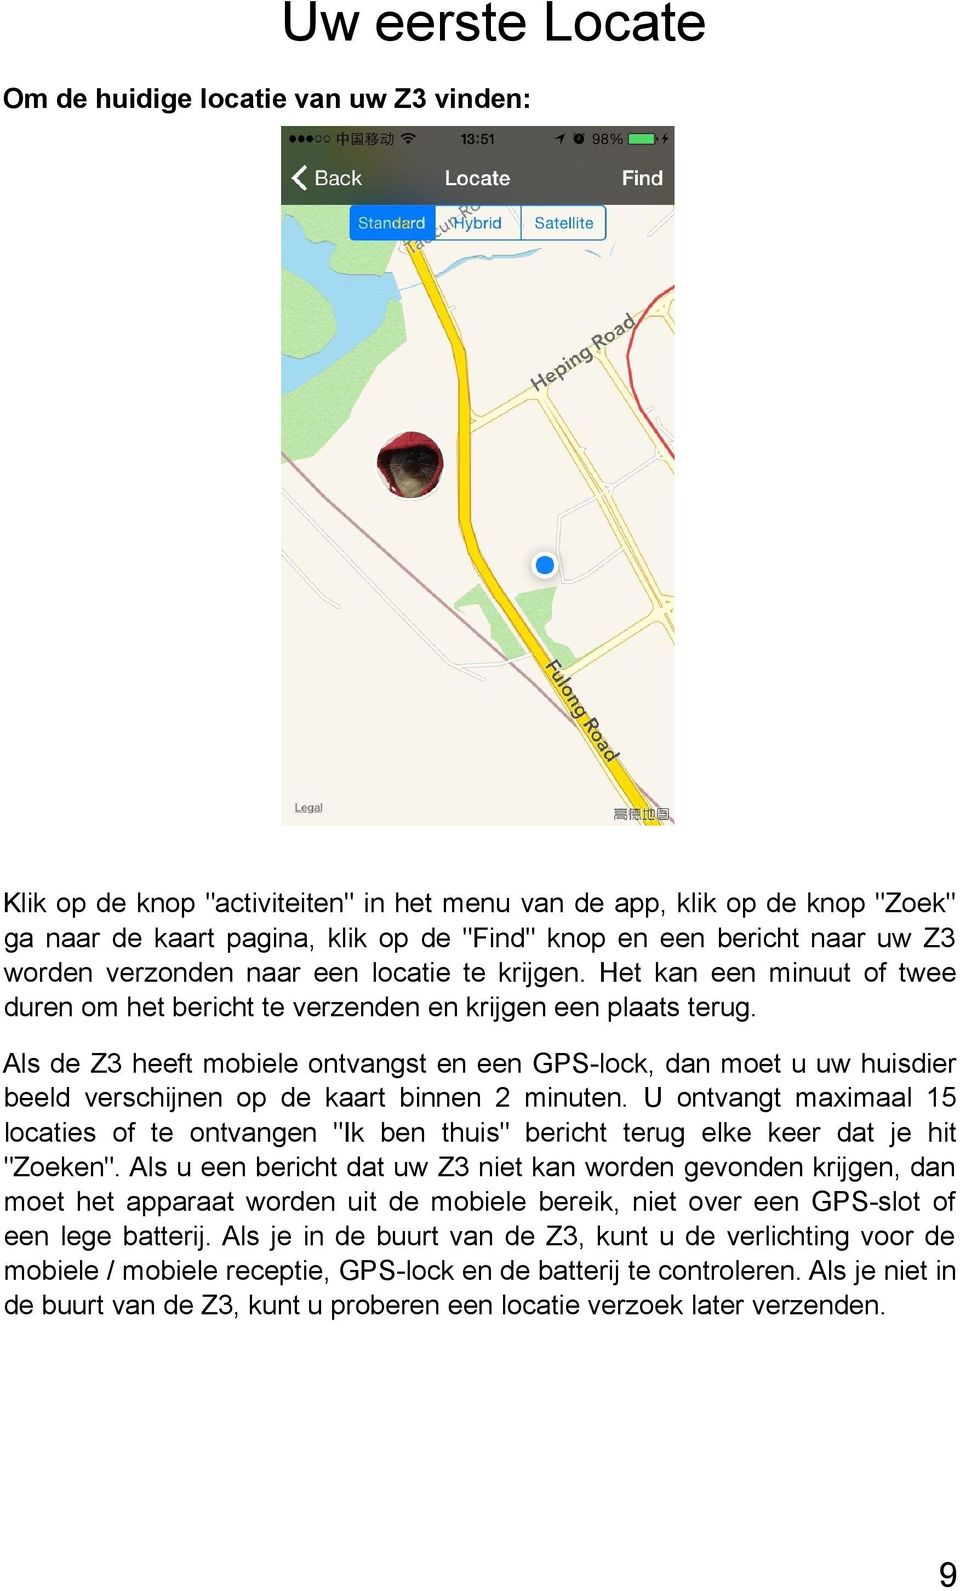 Als de Z3 heeft mobiele ontvangst en een GPS-lock, dan moet u uw huisdier beeld verschijnen op de kaart binnen 2 minuten.